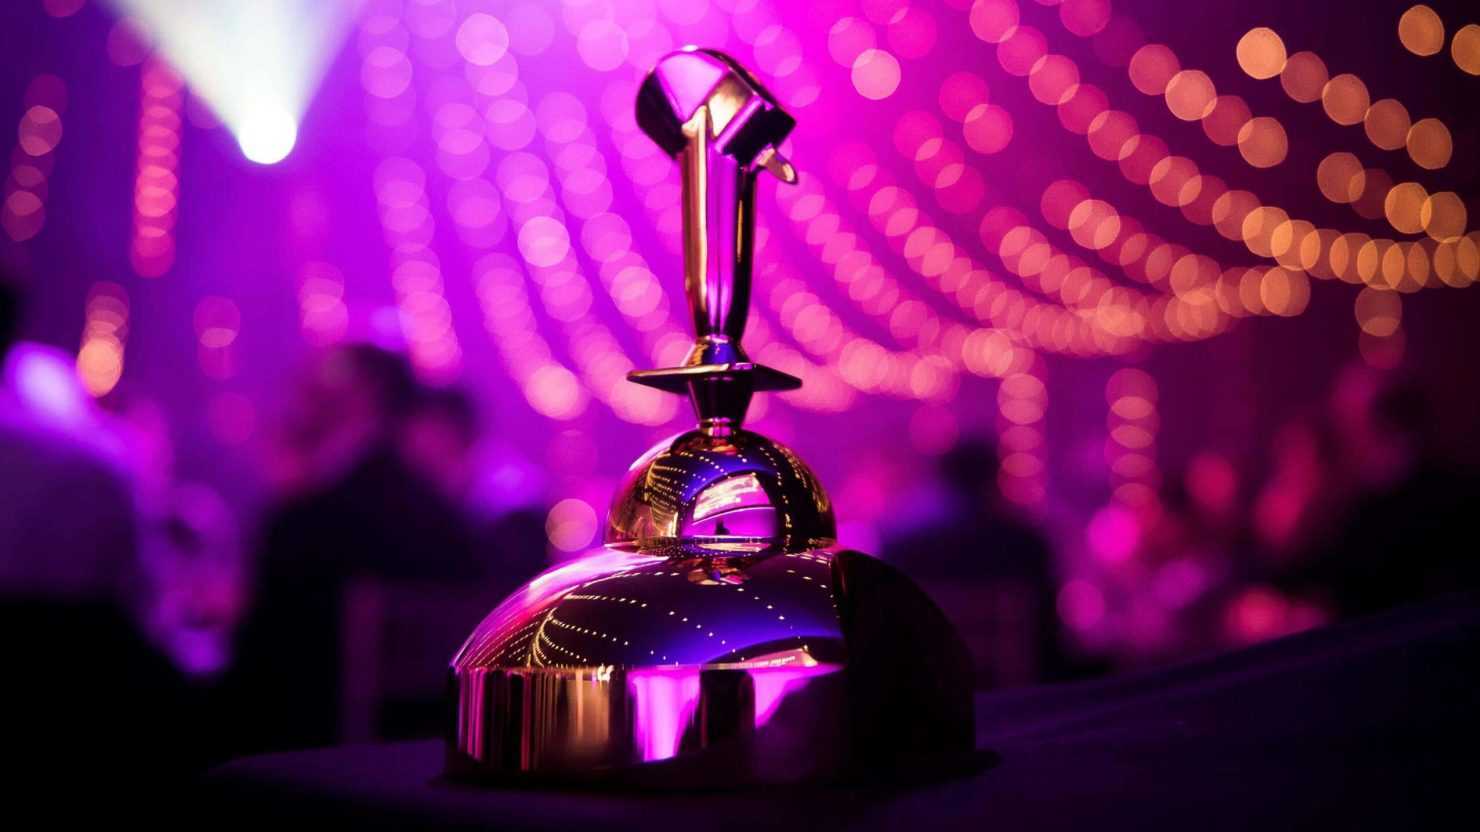 Golden joystick awards 2021: winners revealed on november 23